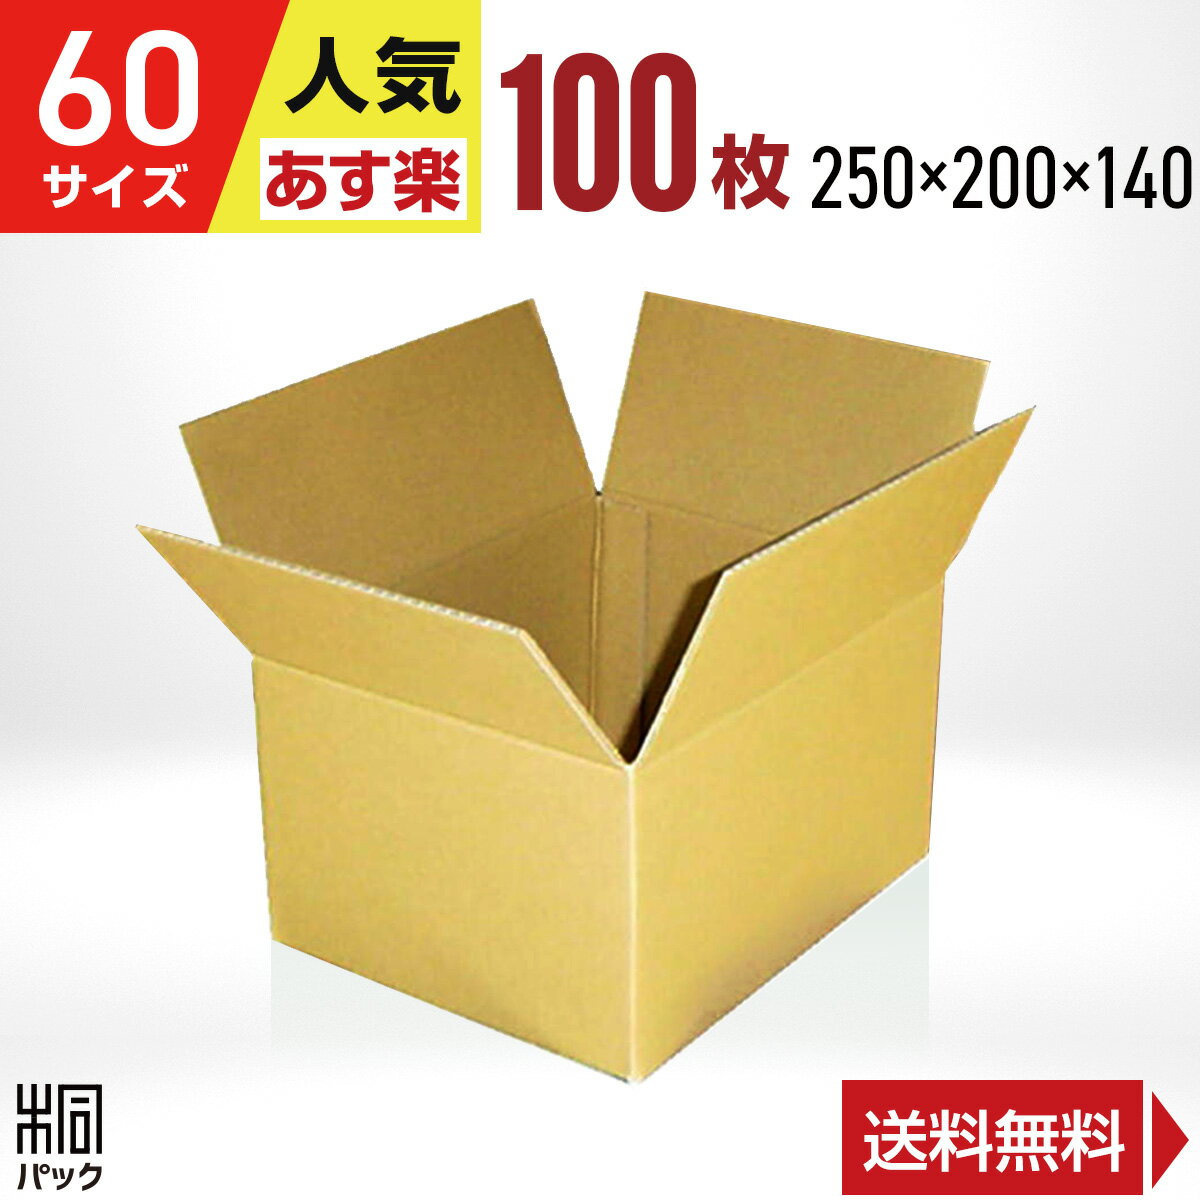 カリラ 段ボール 箱 60サイズ 100枚 (250x200x140) 段ボール 60 宅配 梱包 通販 資材 用 セット 日本製 安い A式 みか